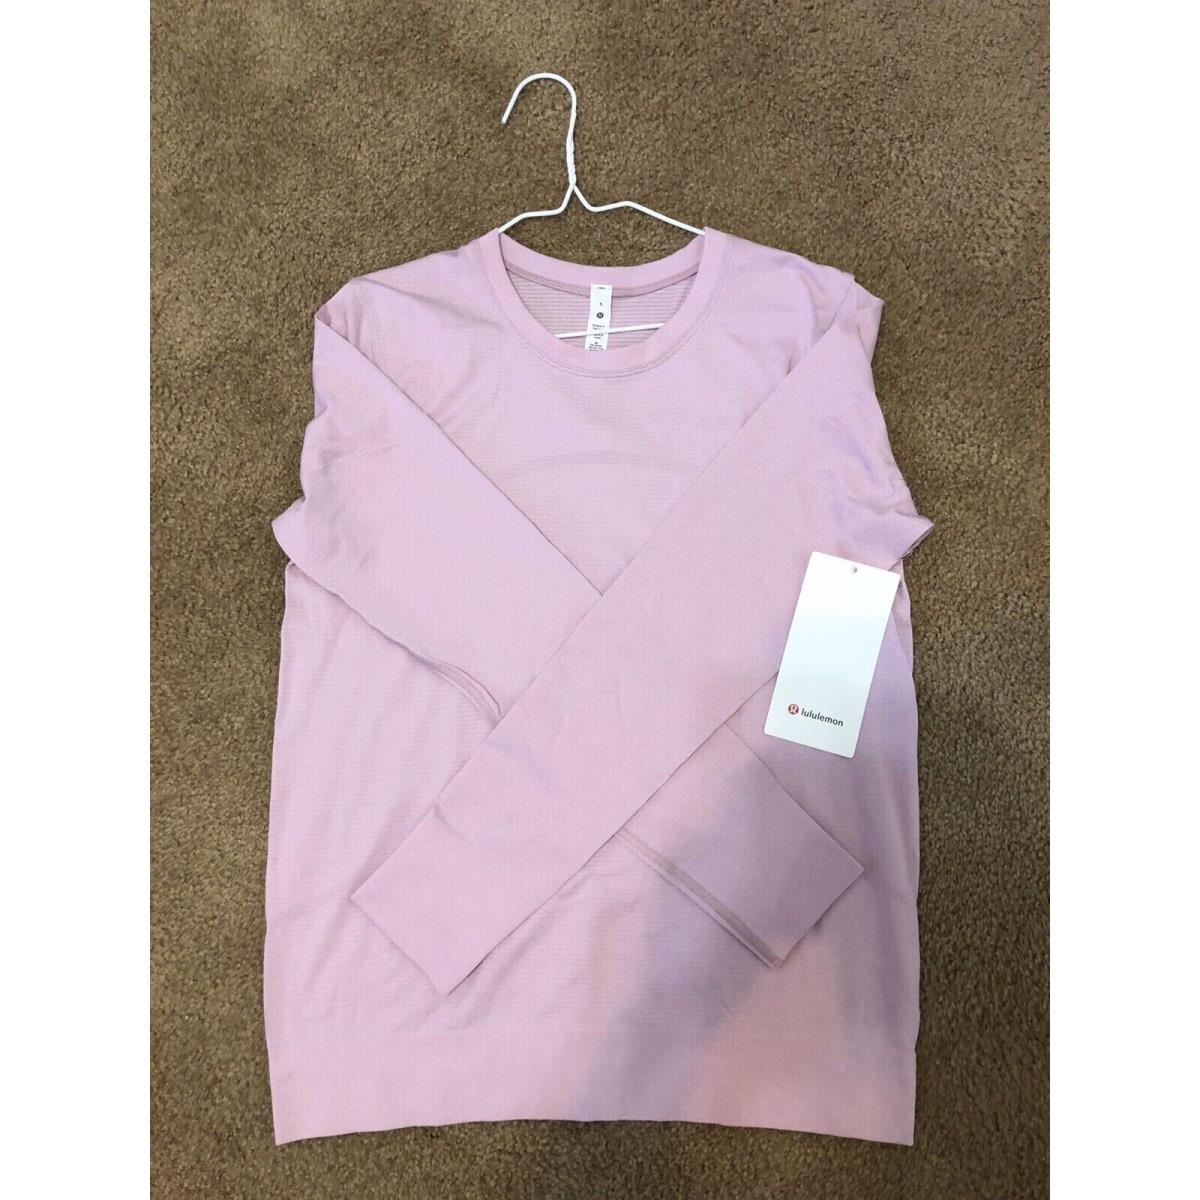 Women`s Lululemon Swiftly Relaxed Long Sleeve Shirt Size 6 - Pkpi Pink